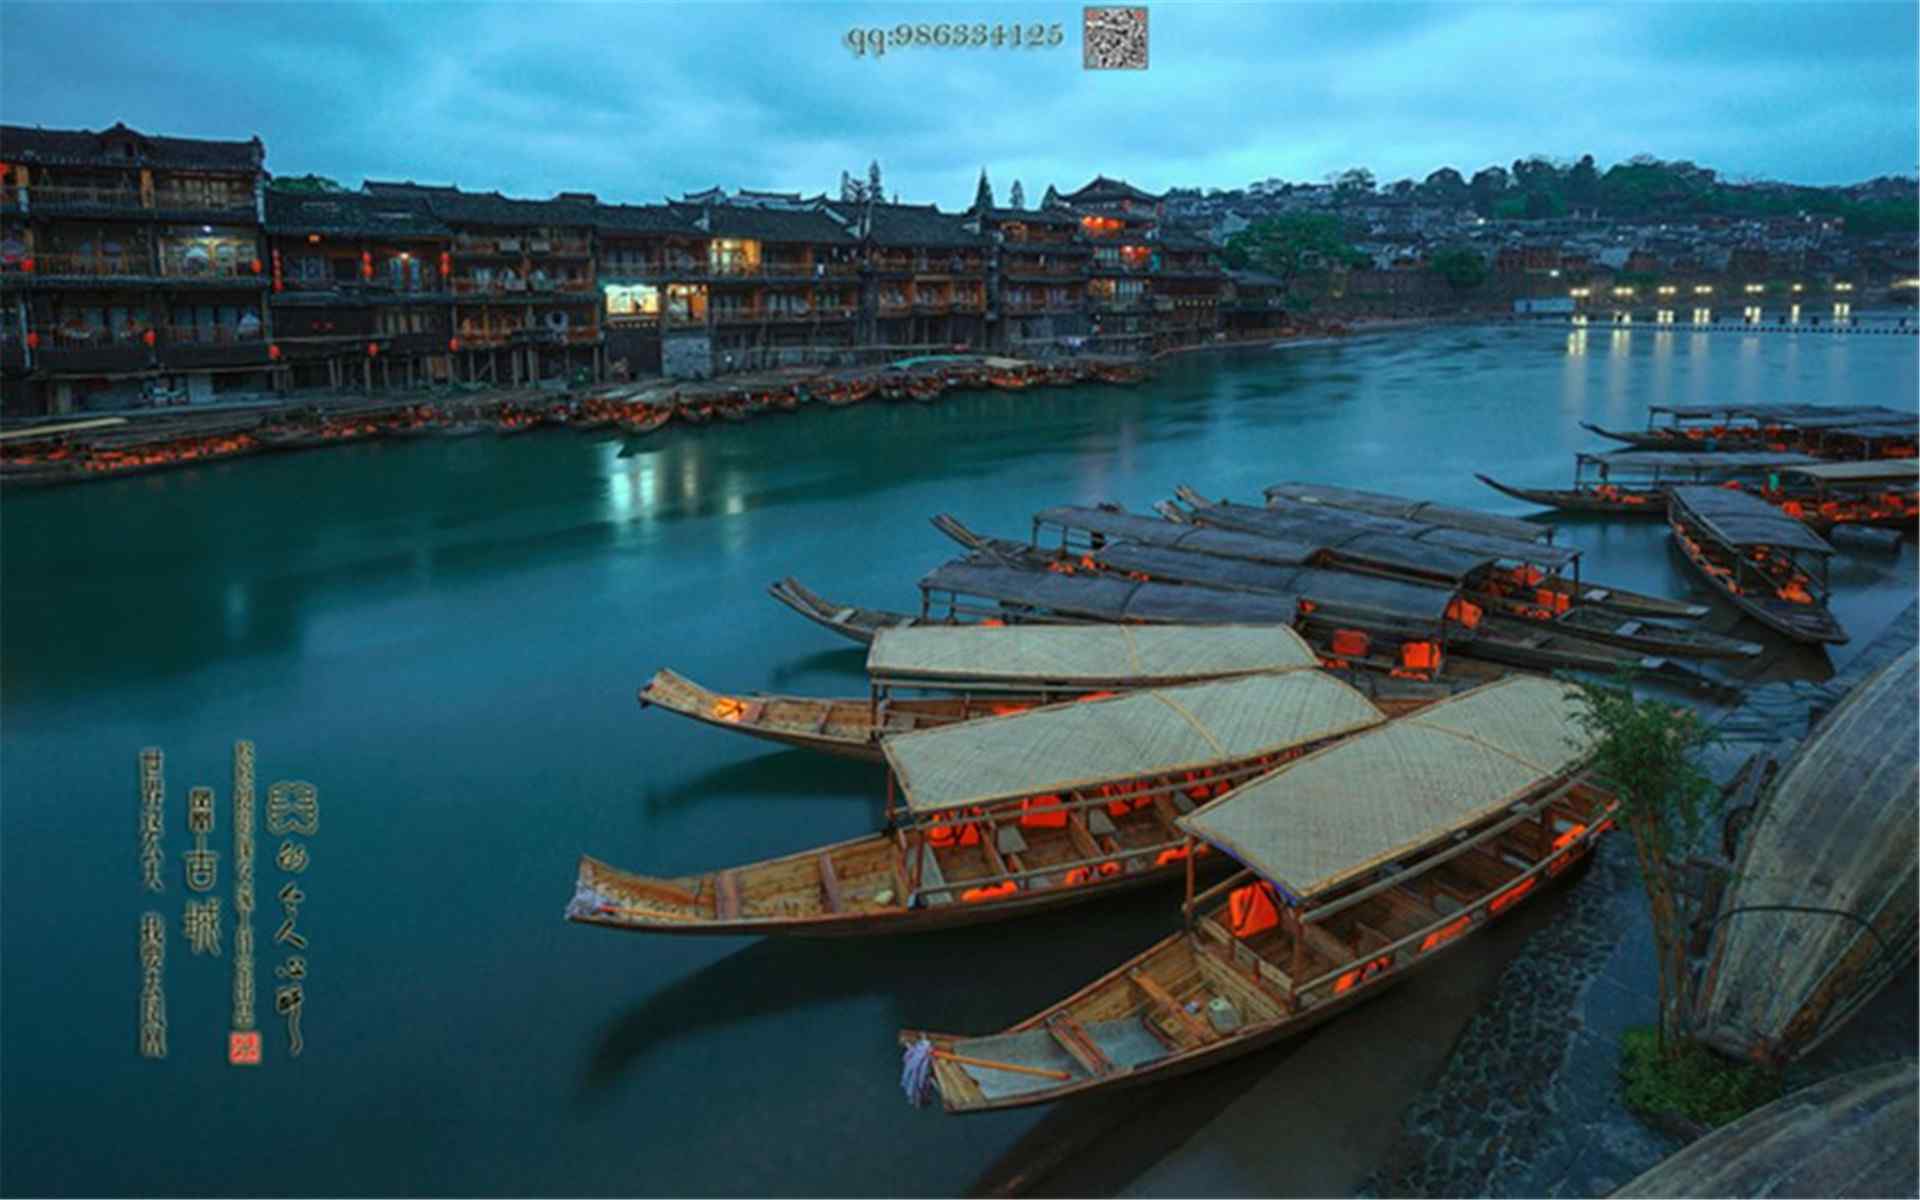 美丽的湖南湘西凤凰古城风景图片桌面壁纸